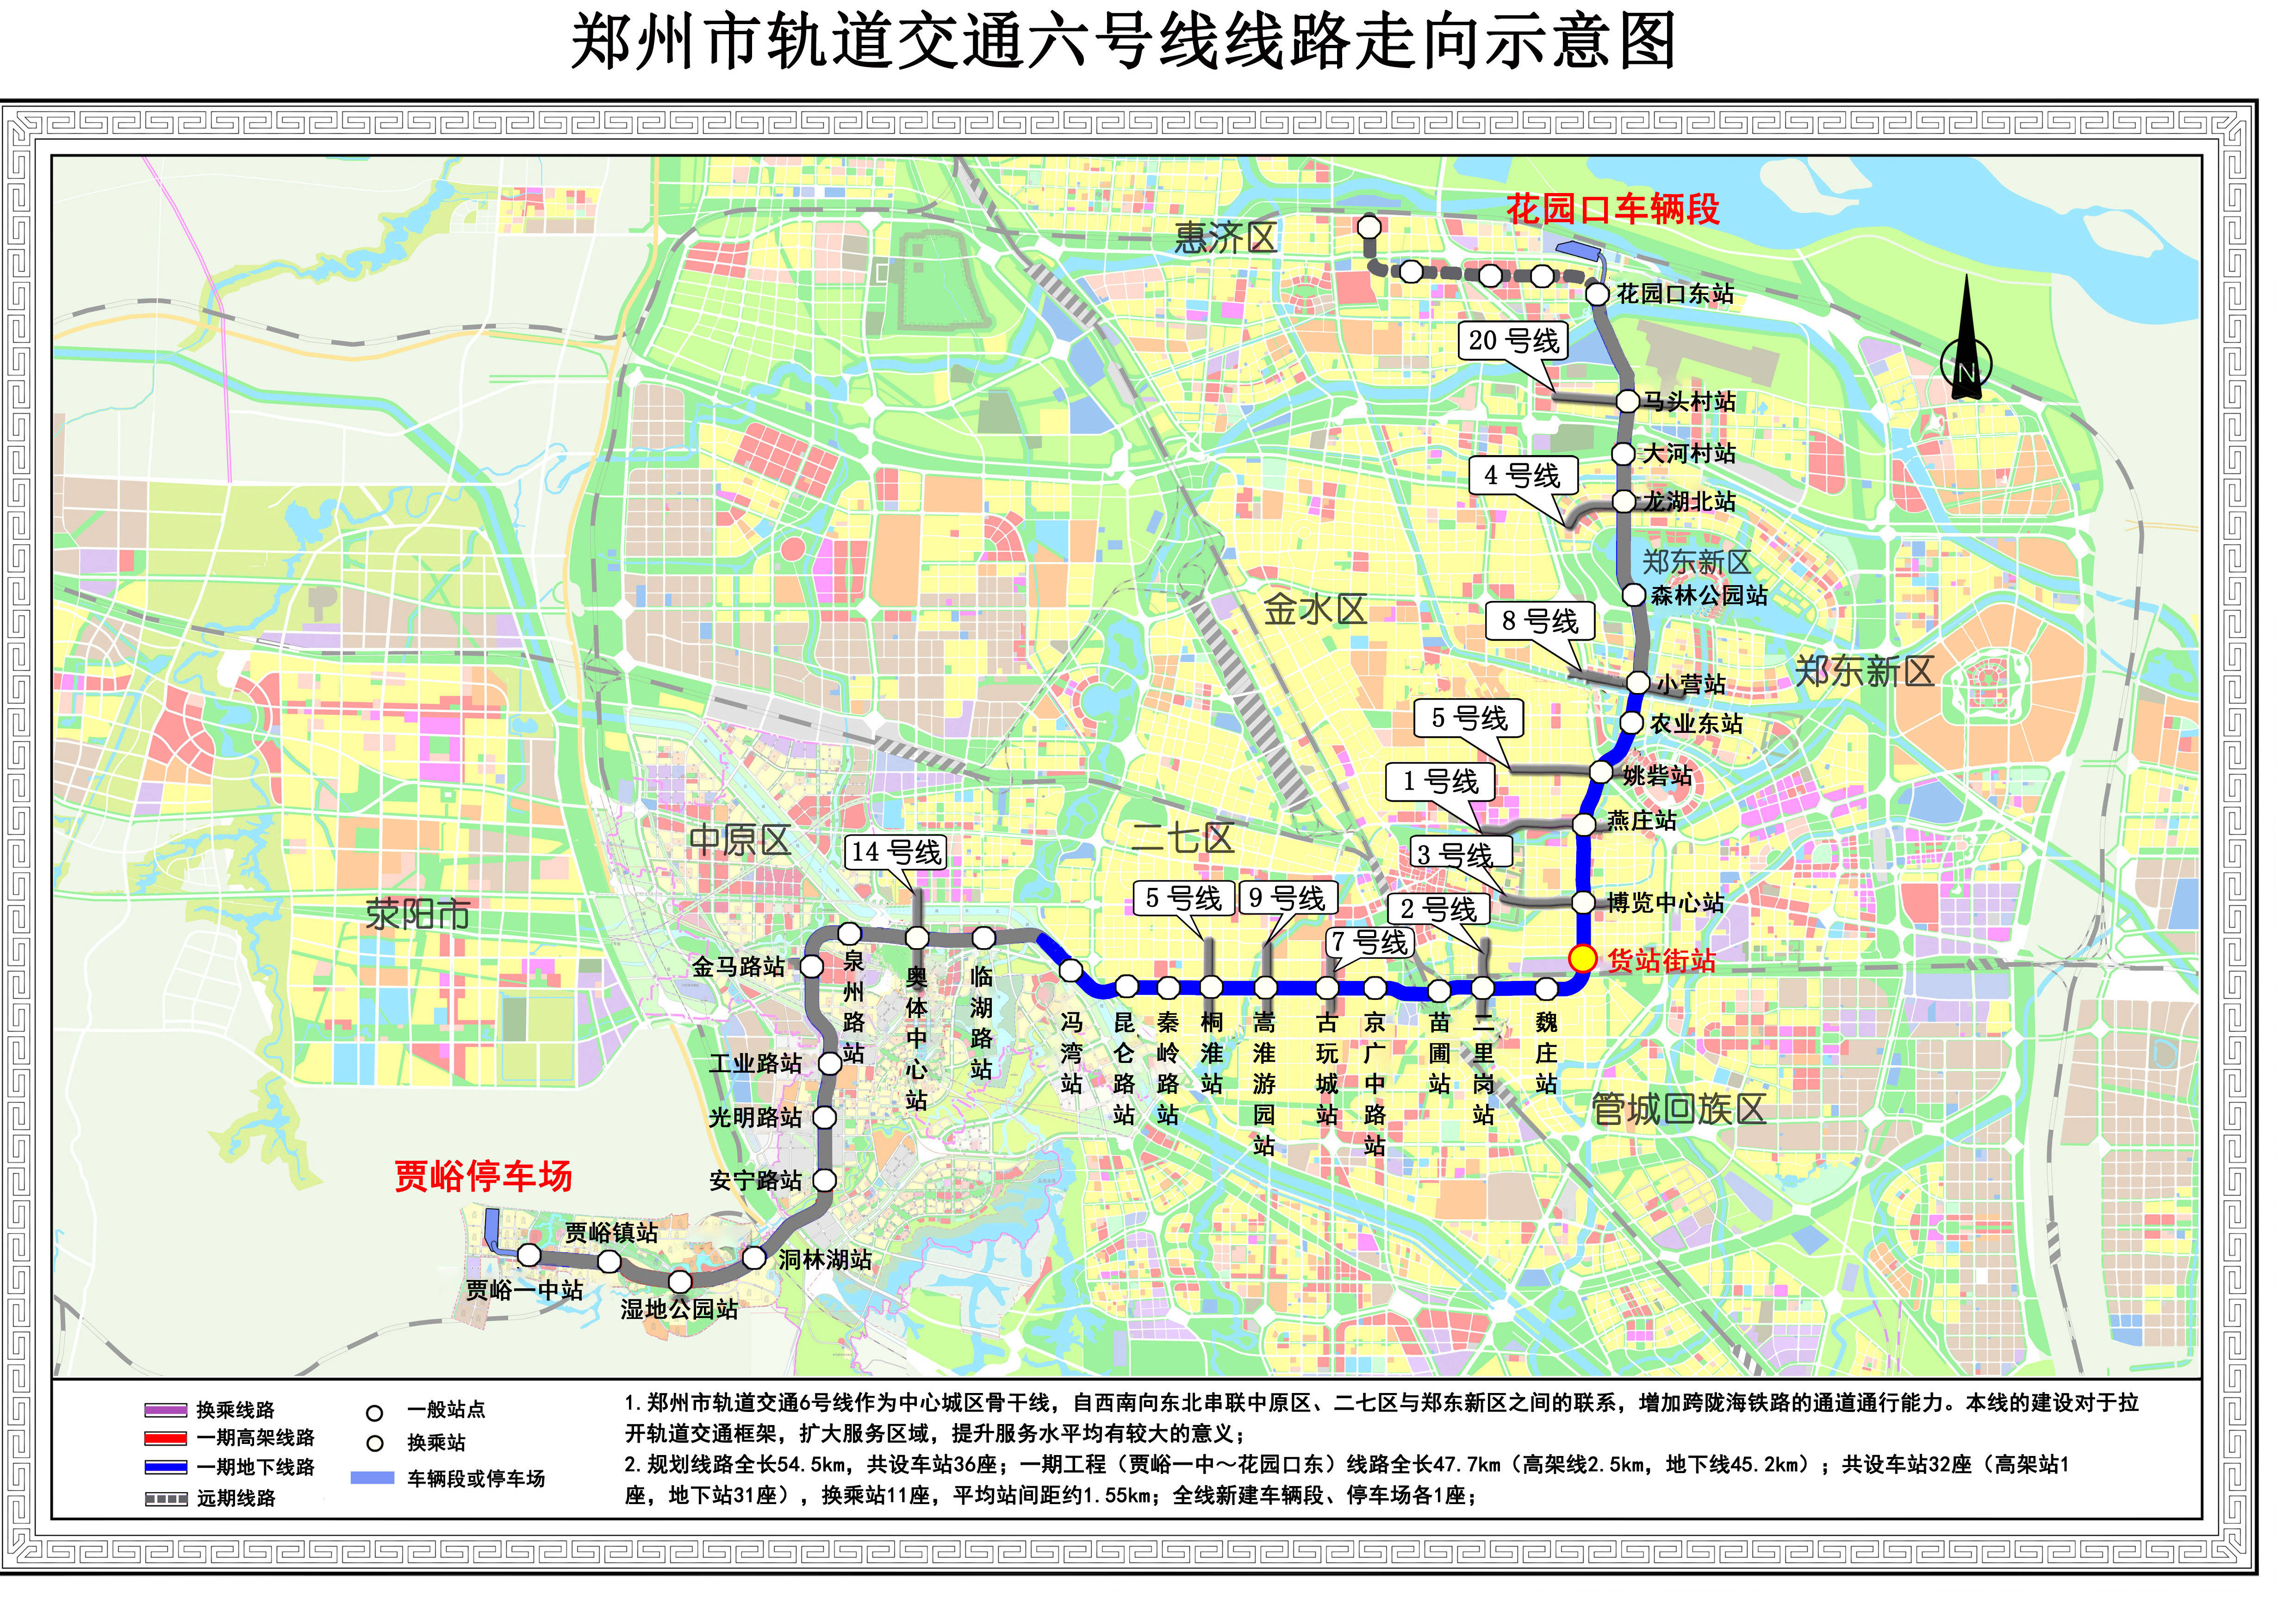 郑州地铁6号线要来啦,有望年底开通载客运营